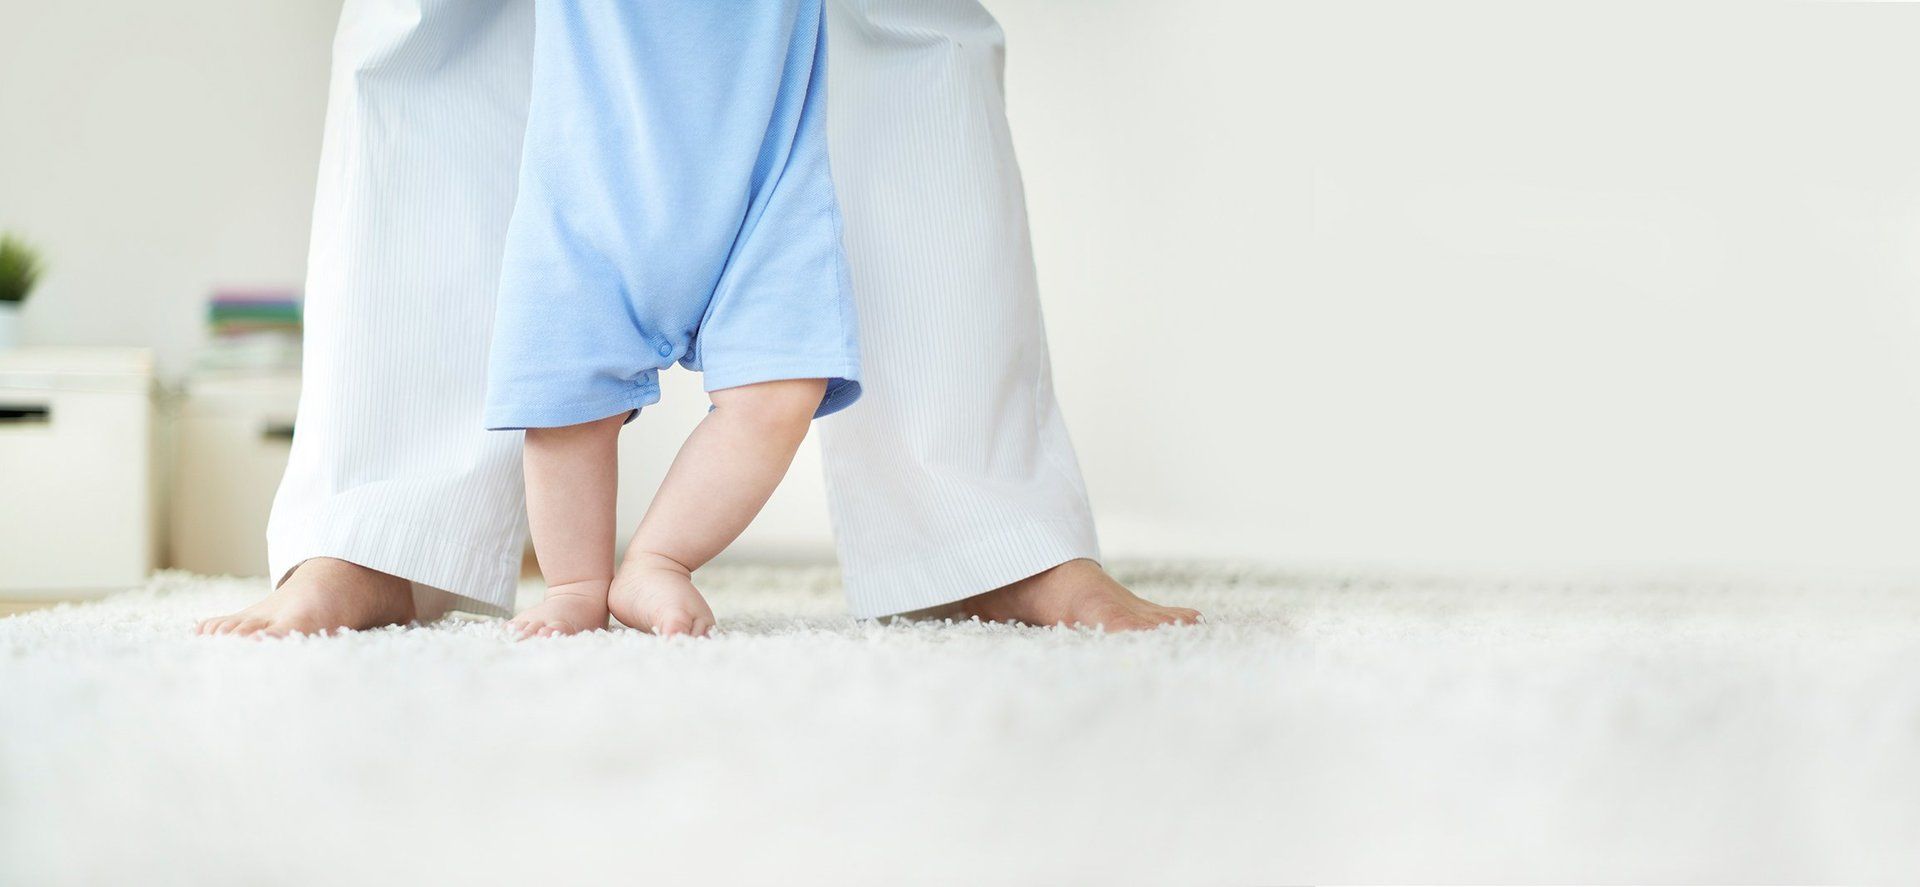 Baby walking on carpet